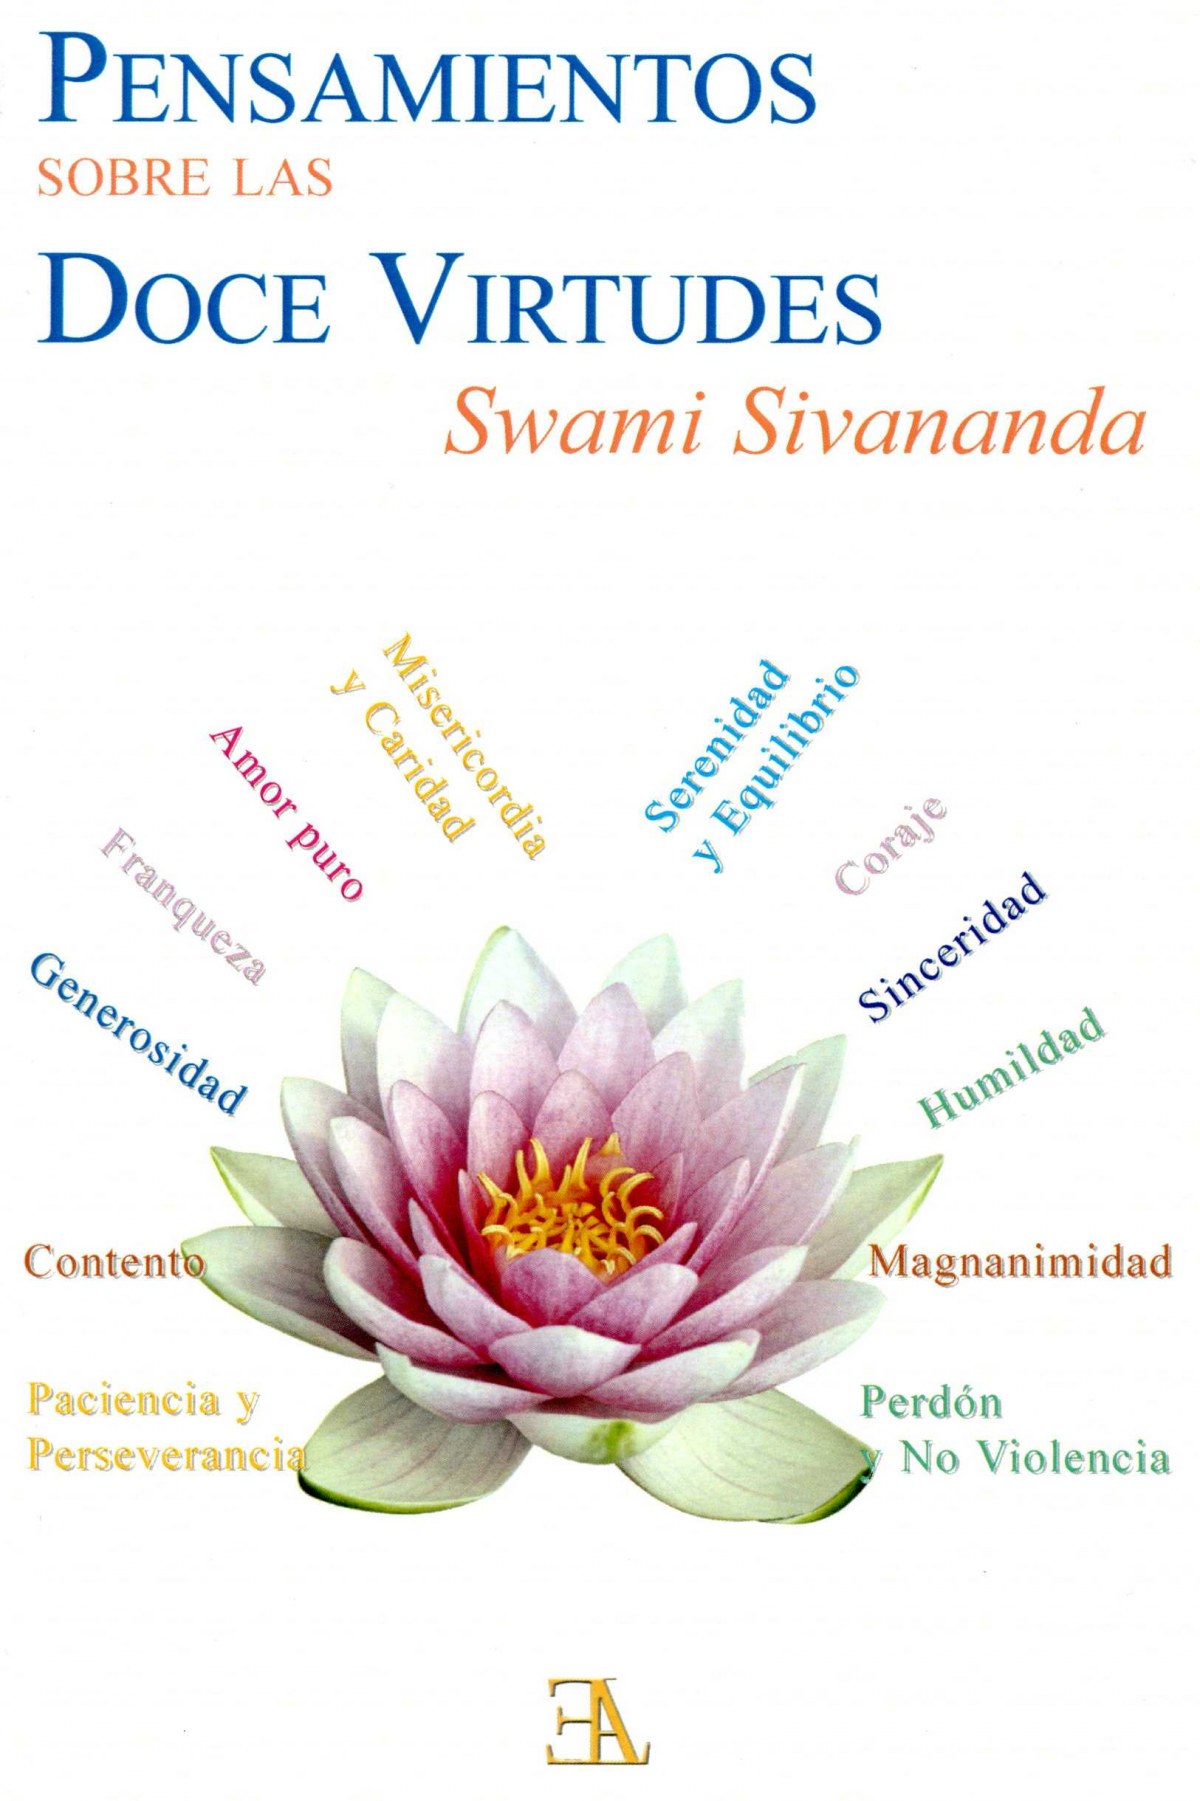 Pensamientos sobre las doce virtudes - Sivananda, Swami